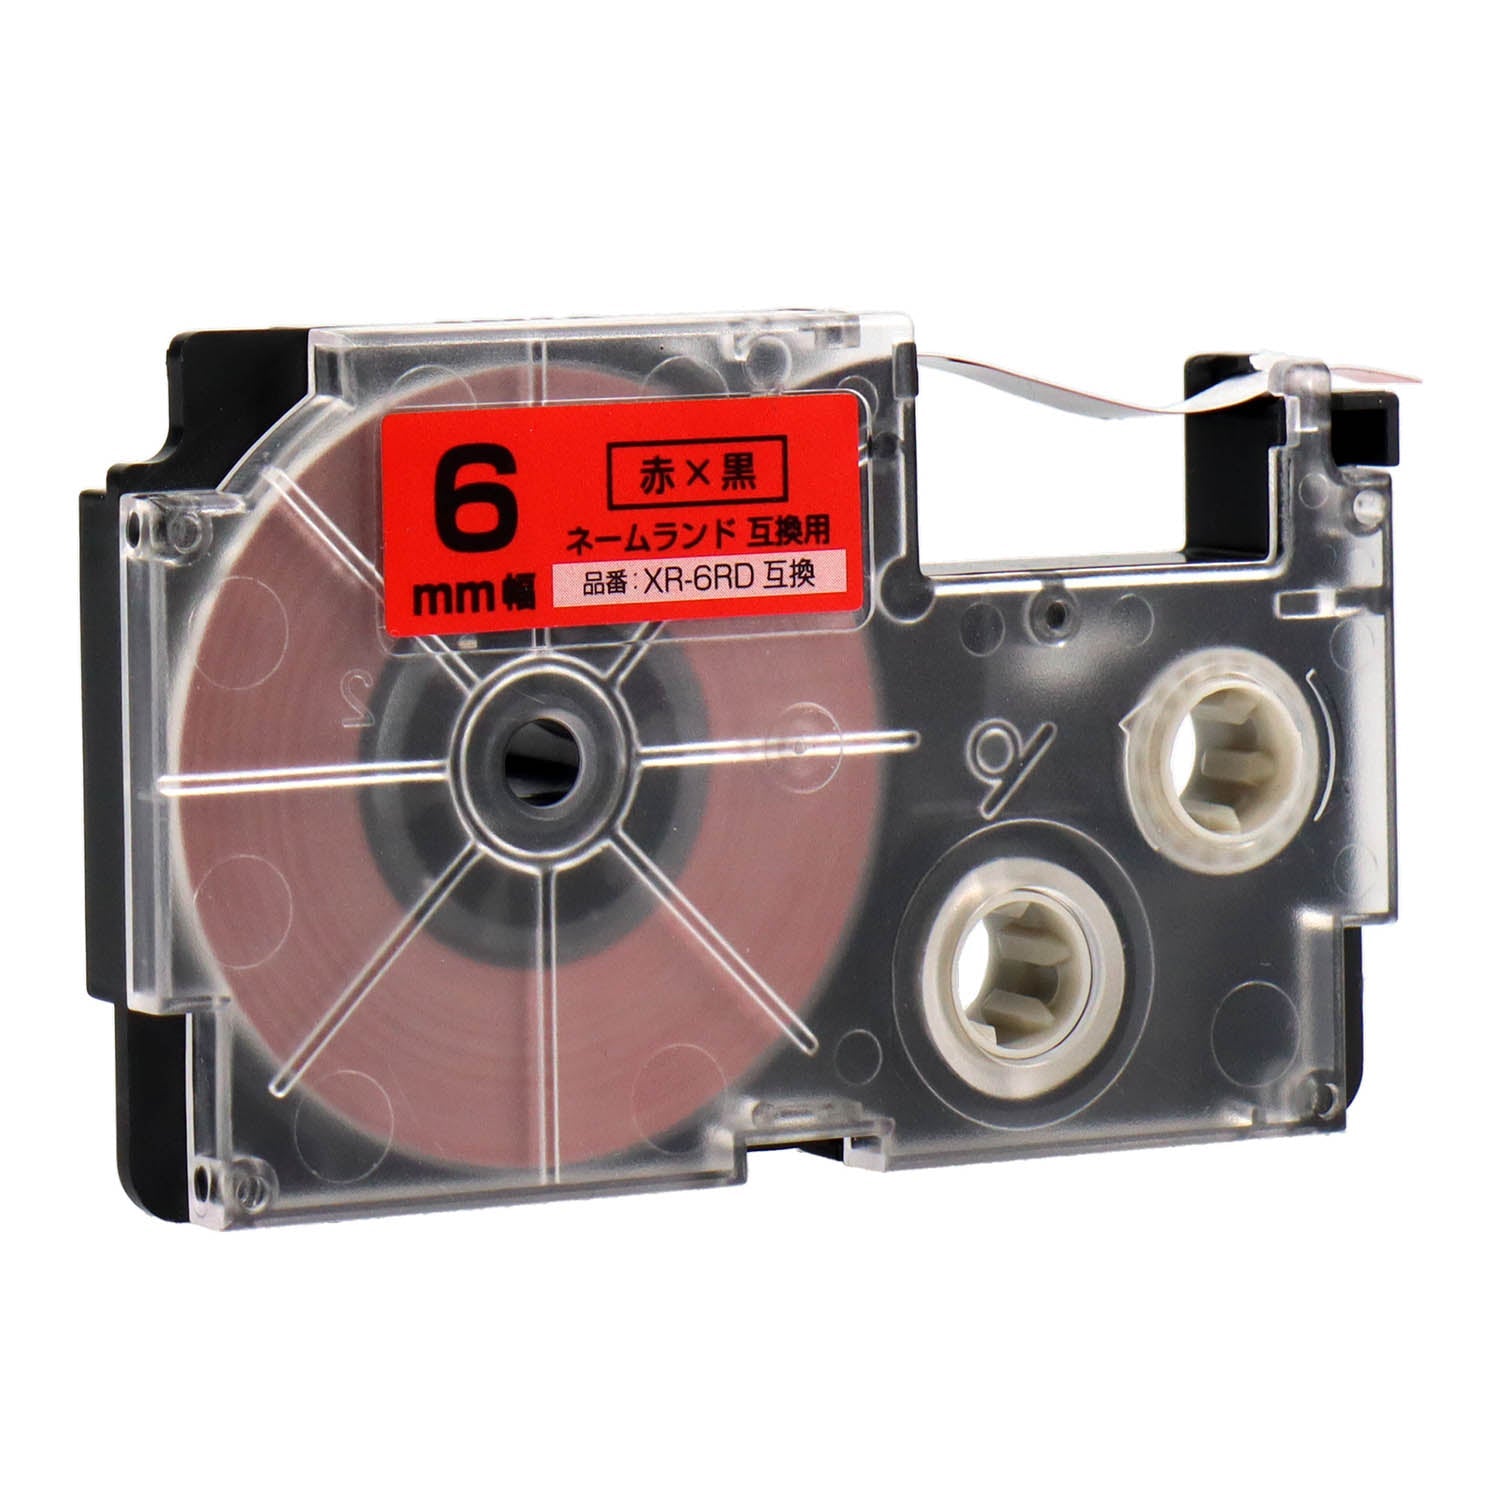 ネームランド用互換テープカートリッジ 赤×黒文字 6mm